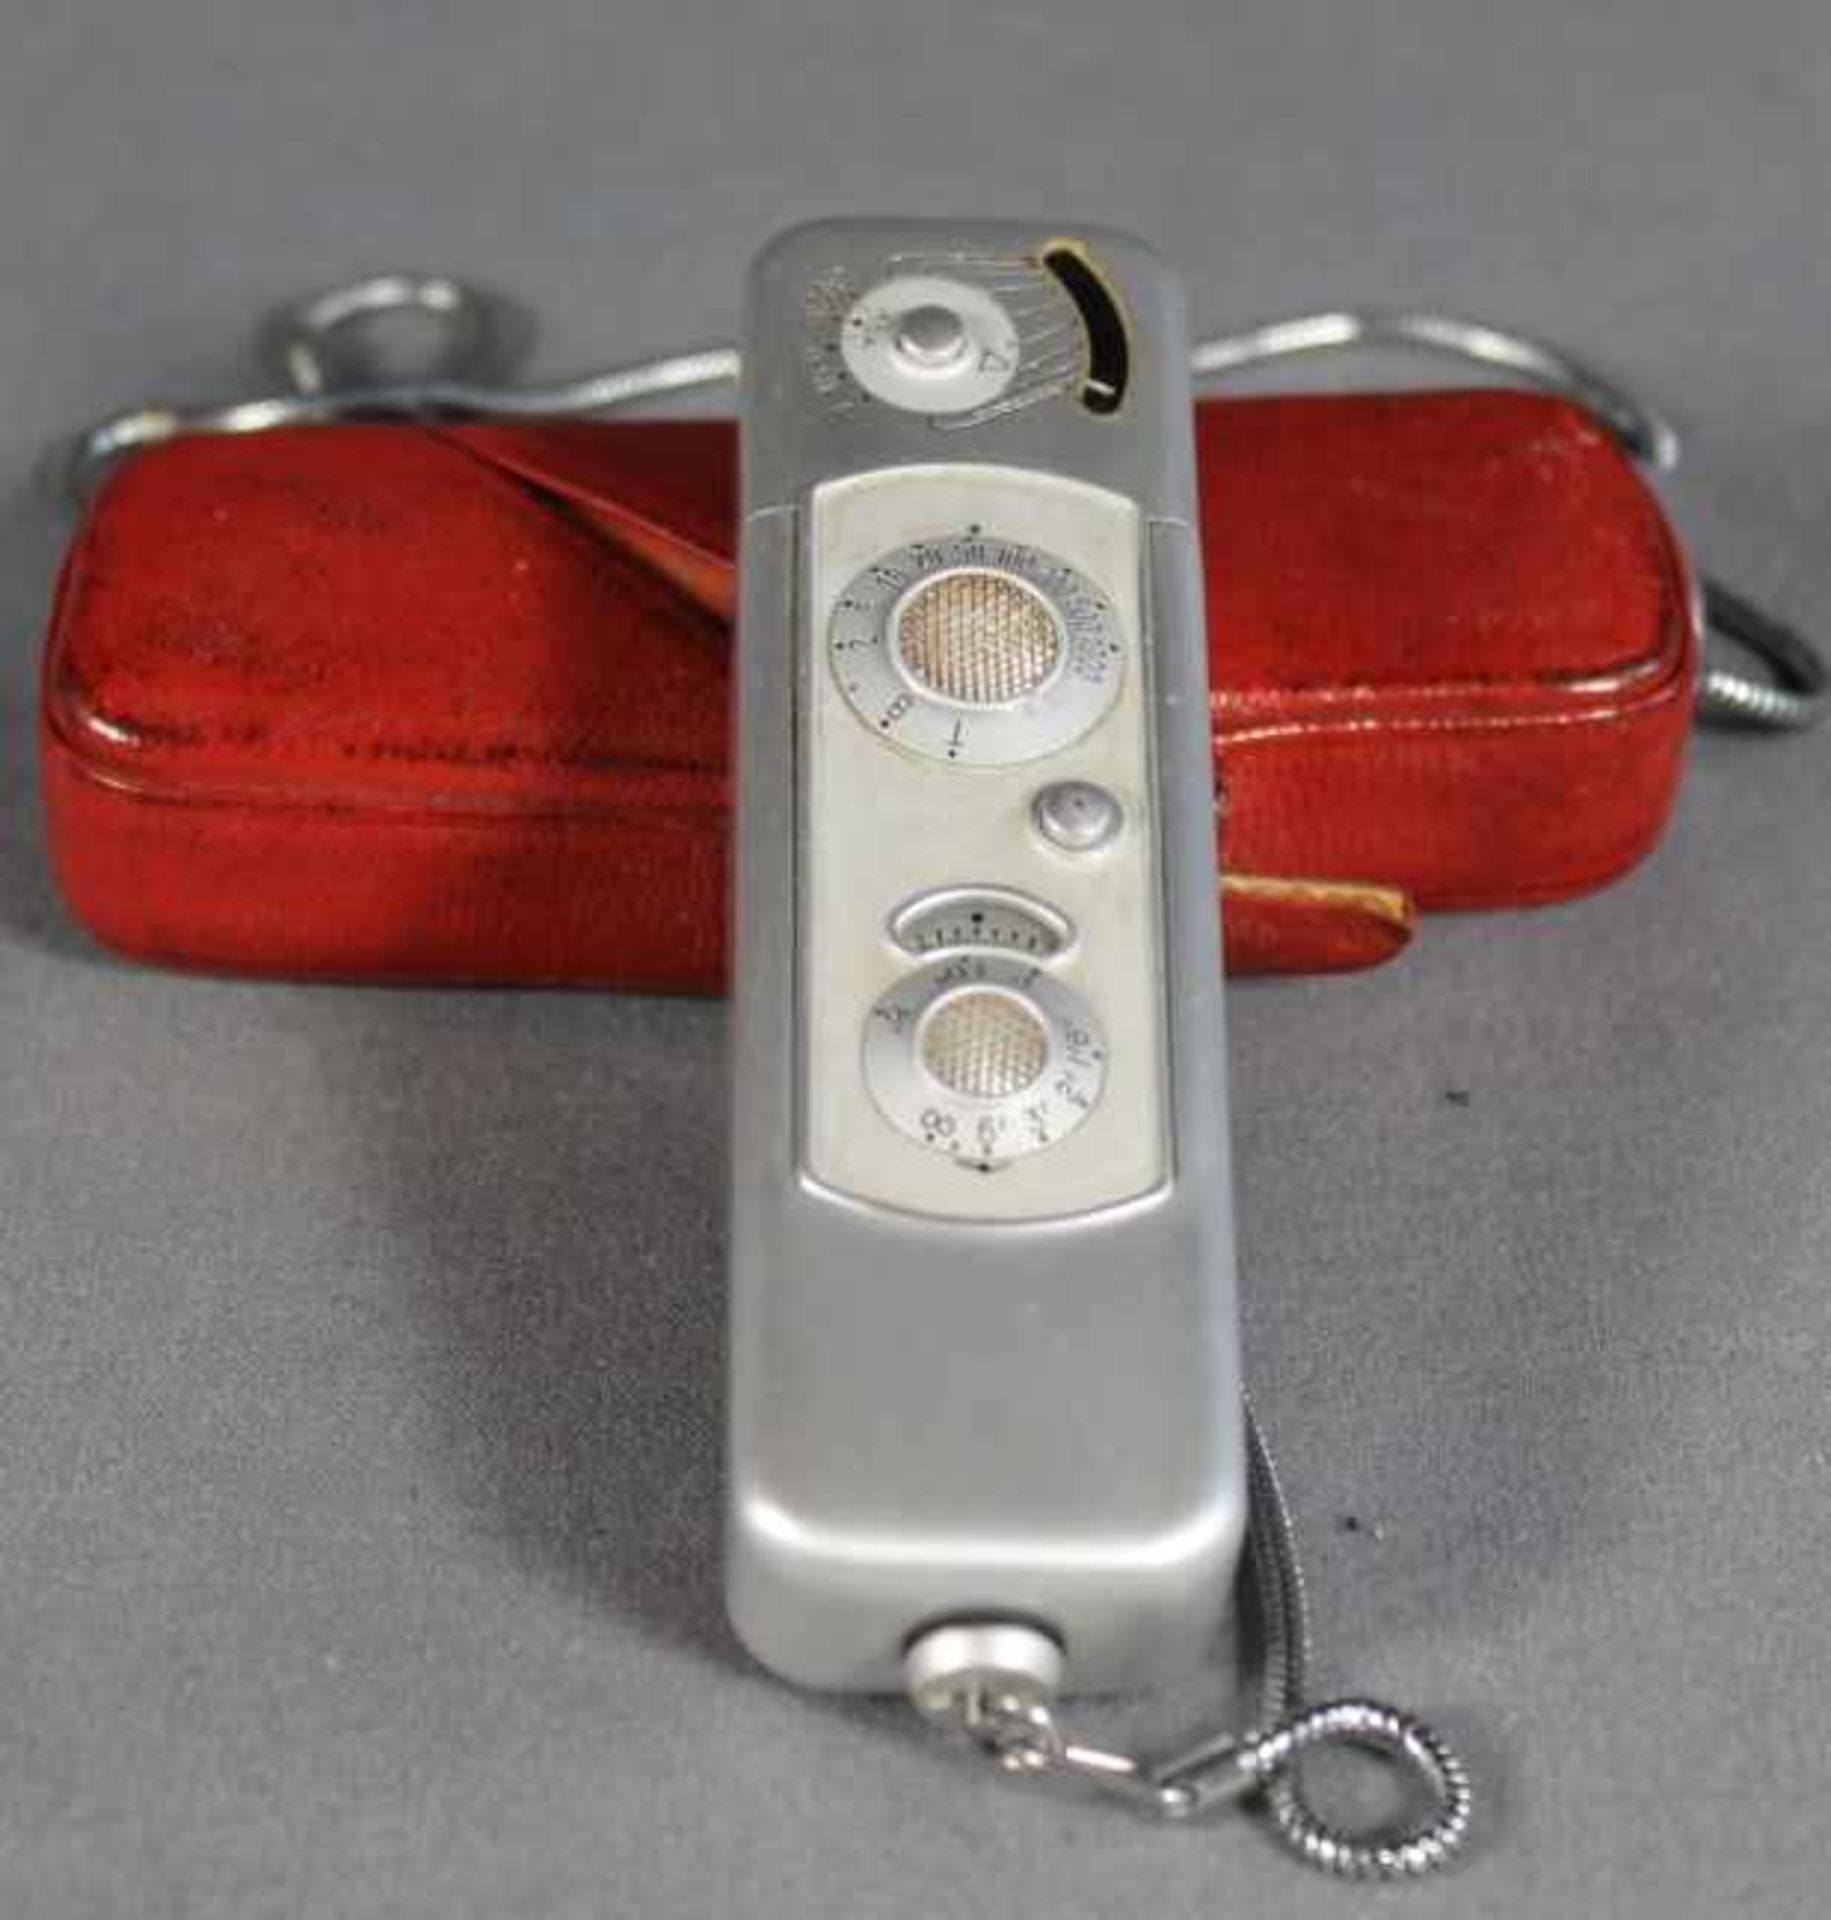 1 Miniaturkamera Minox mit Complan 1:3,5/15mm Chrom, rote Bereitschaftstasche und Kette, optisch